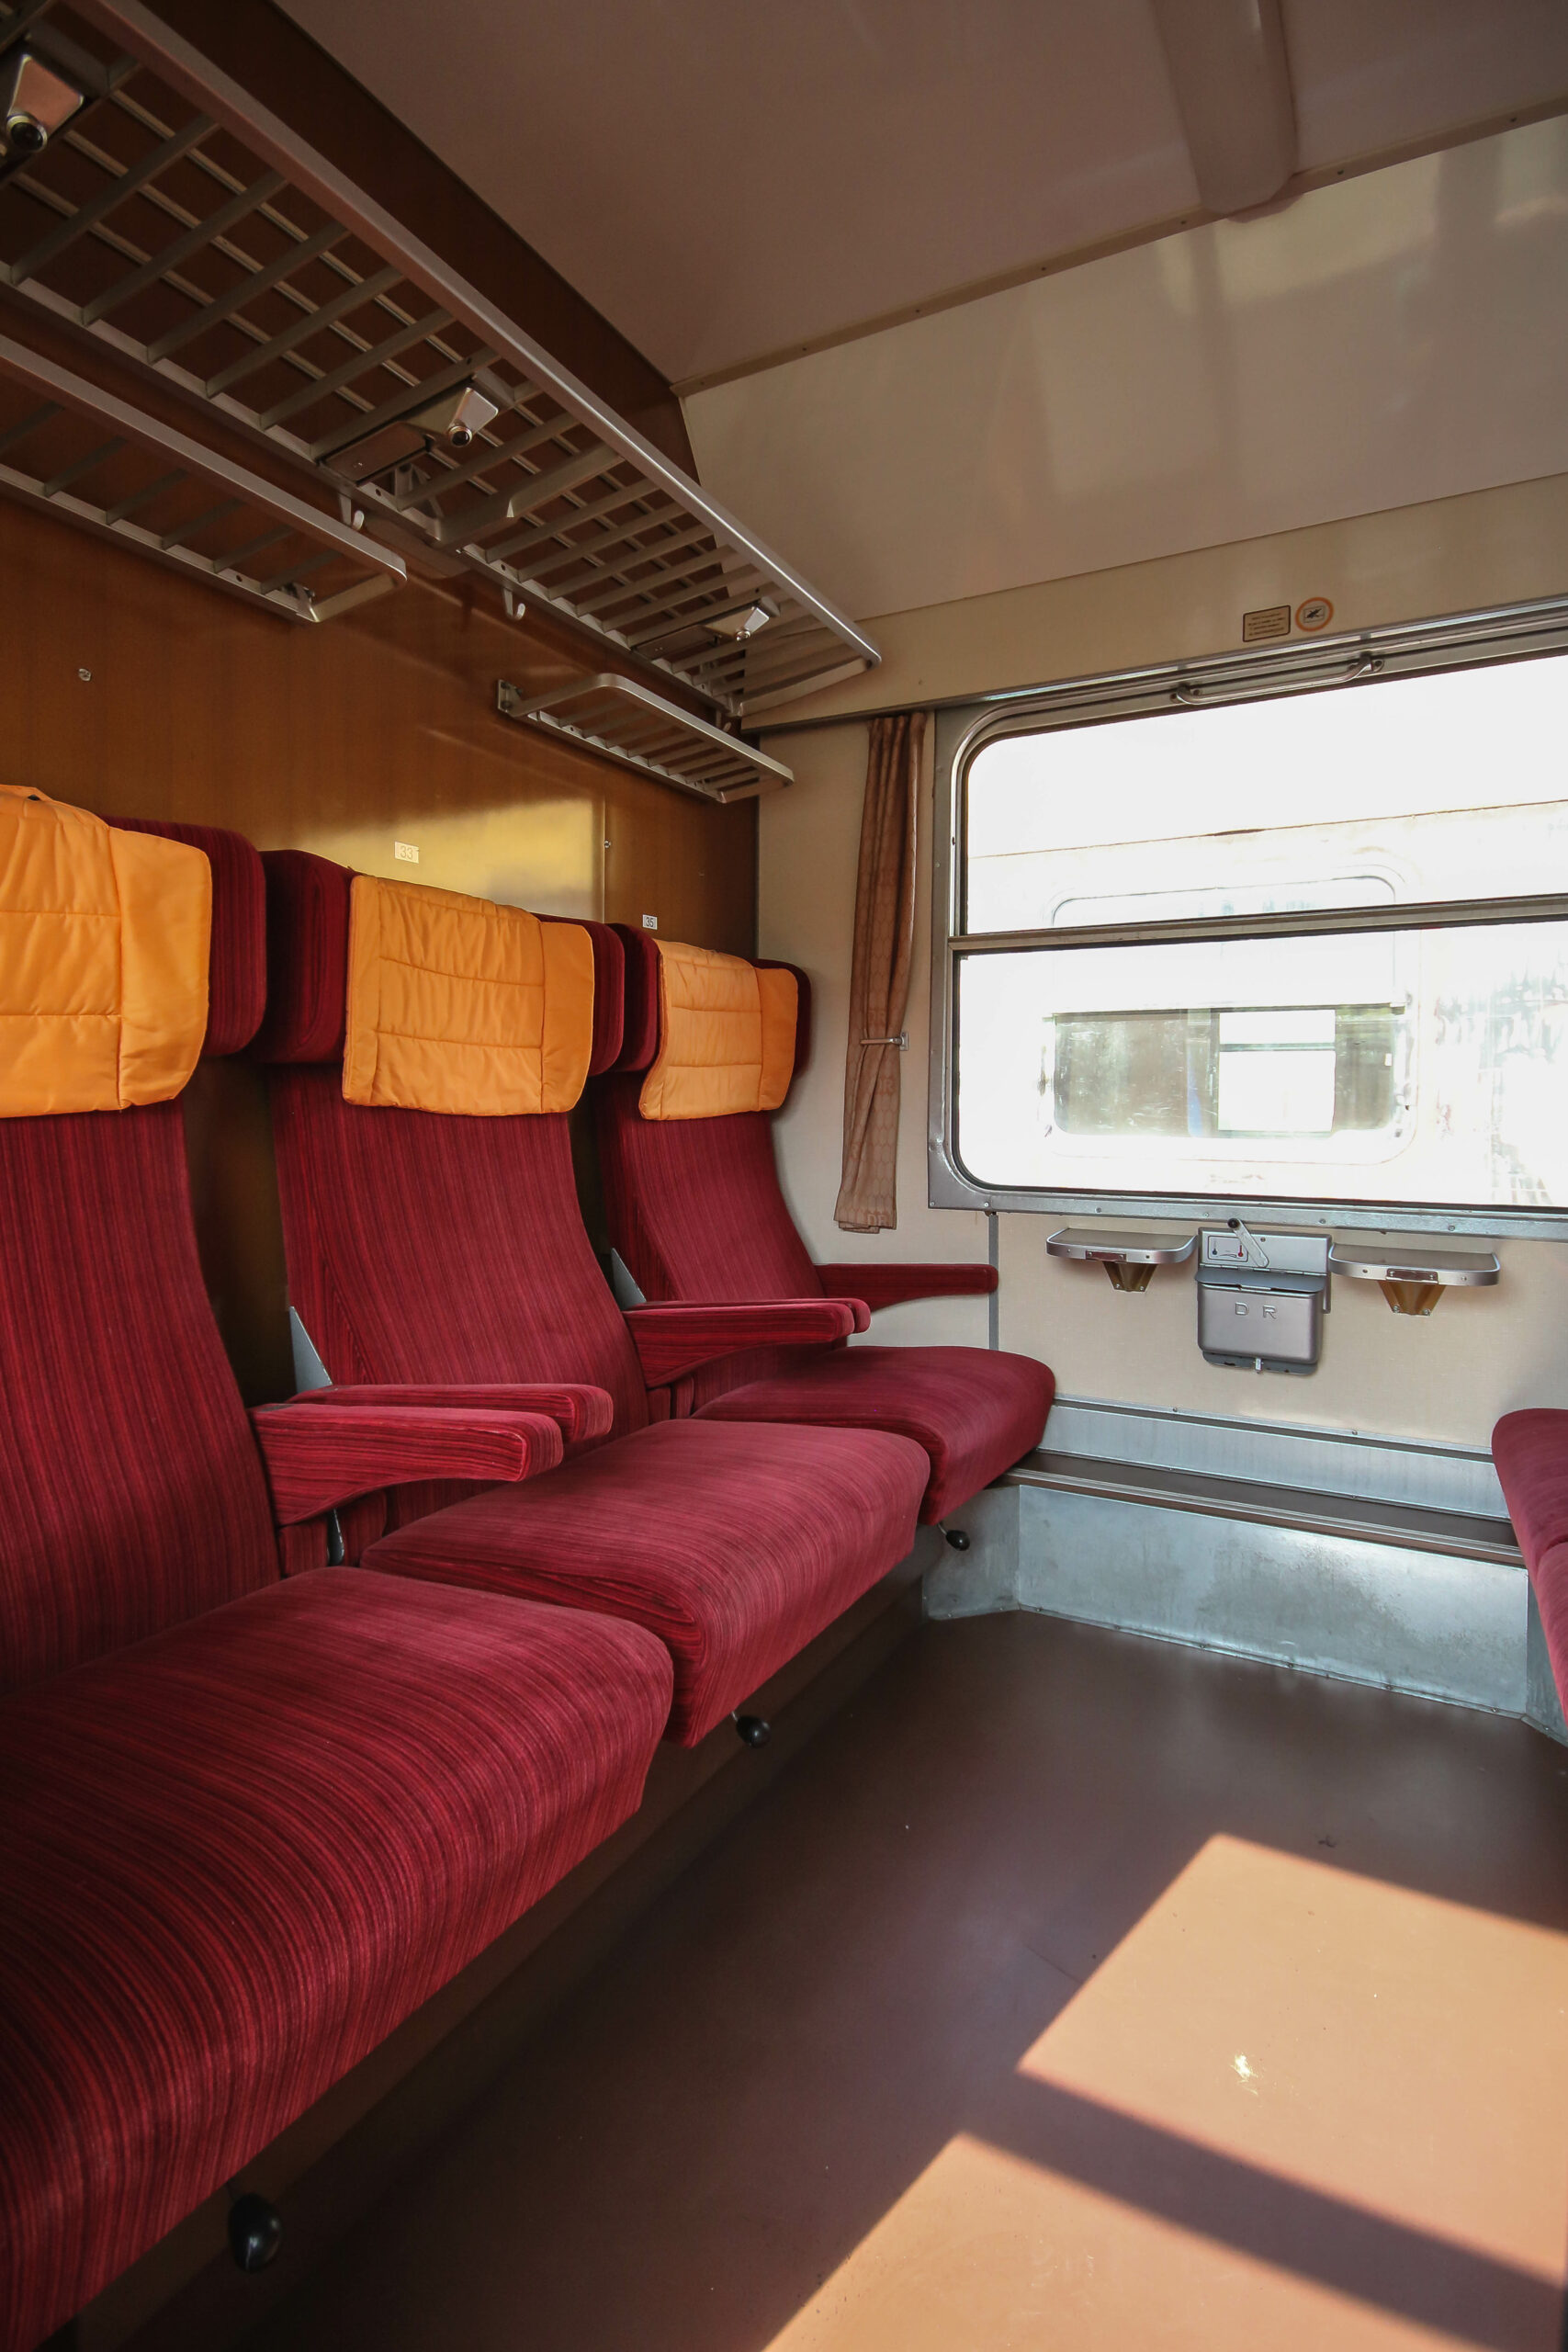 Das Bild zeigt den Blick in ein erste Klasse Abteil. Die drei Sitze einer Reihe verfügen über getrennte Armlehnen, sind mit rotem Stoff bezogen und haben Kopfkissen.